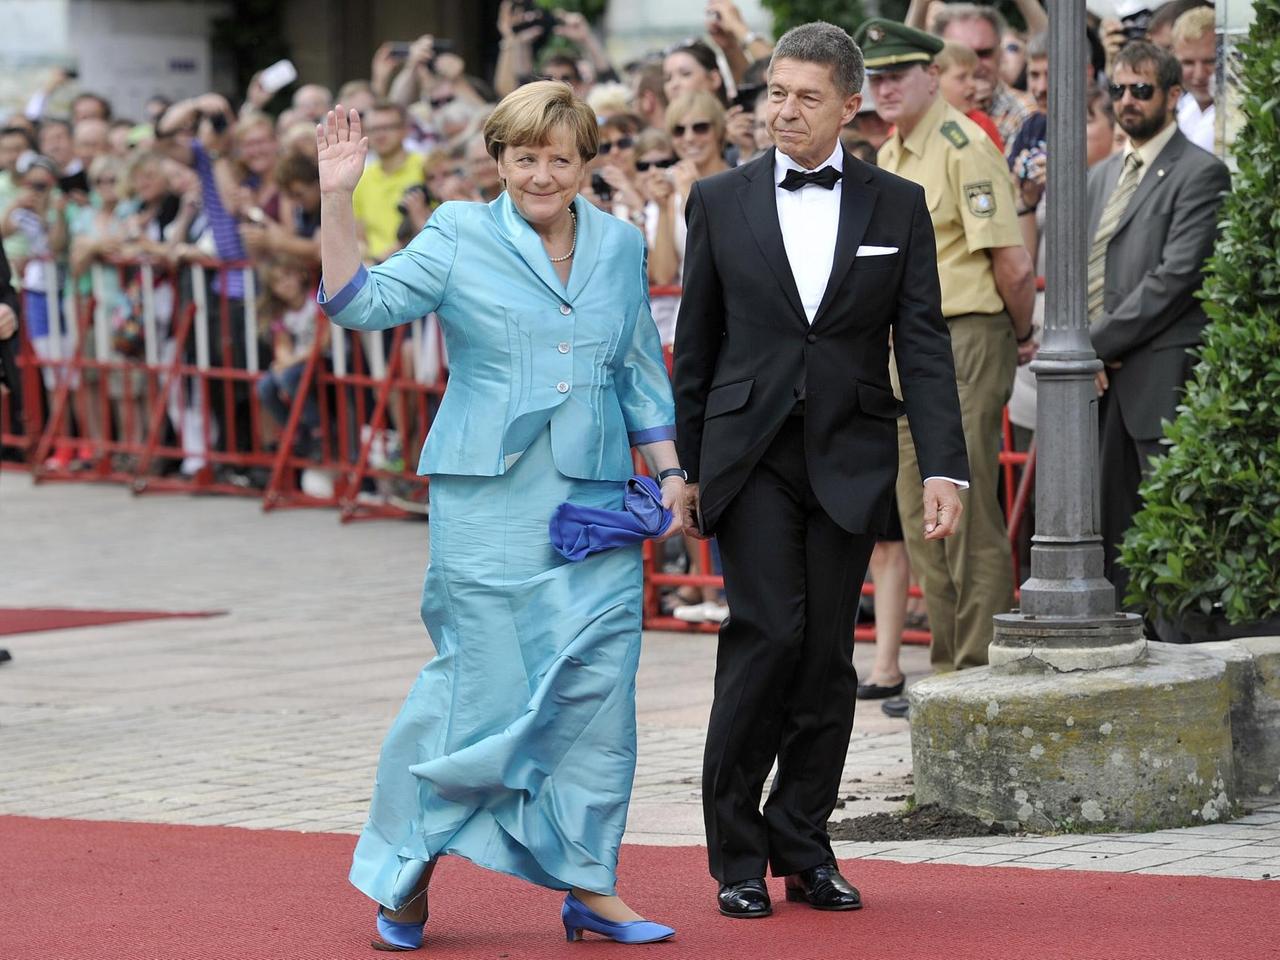 Bundeskanzlerin Dr. Angela MERKEL (CDU) mit Ihrem Ehemann Joachim SAUER bei der Eroeffnung der Bayreuther Richard Wagner Festspiele am 25.07.2015. 